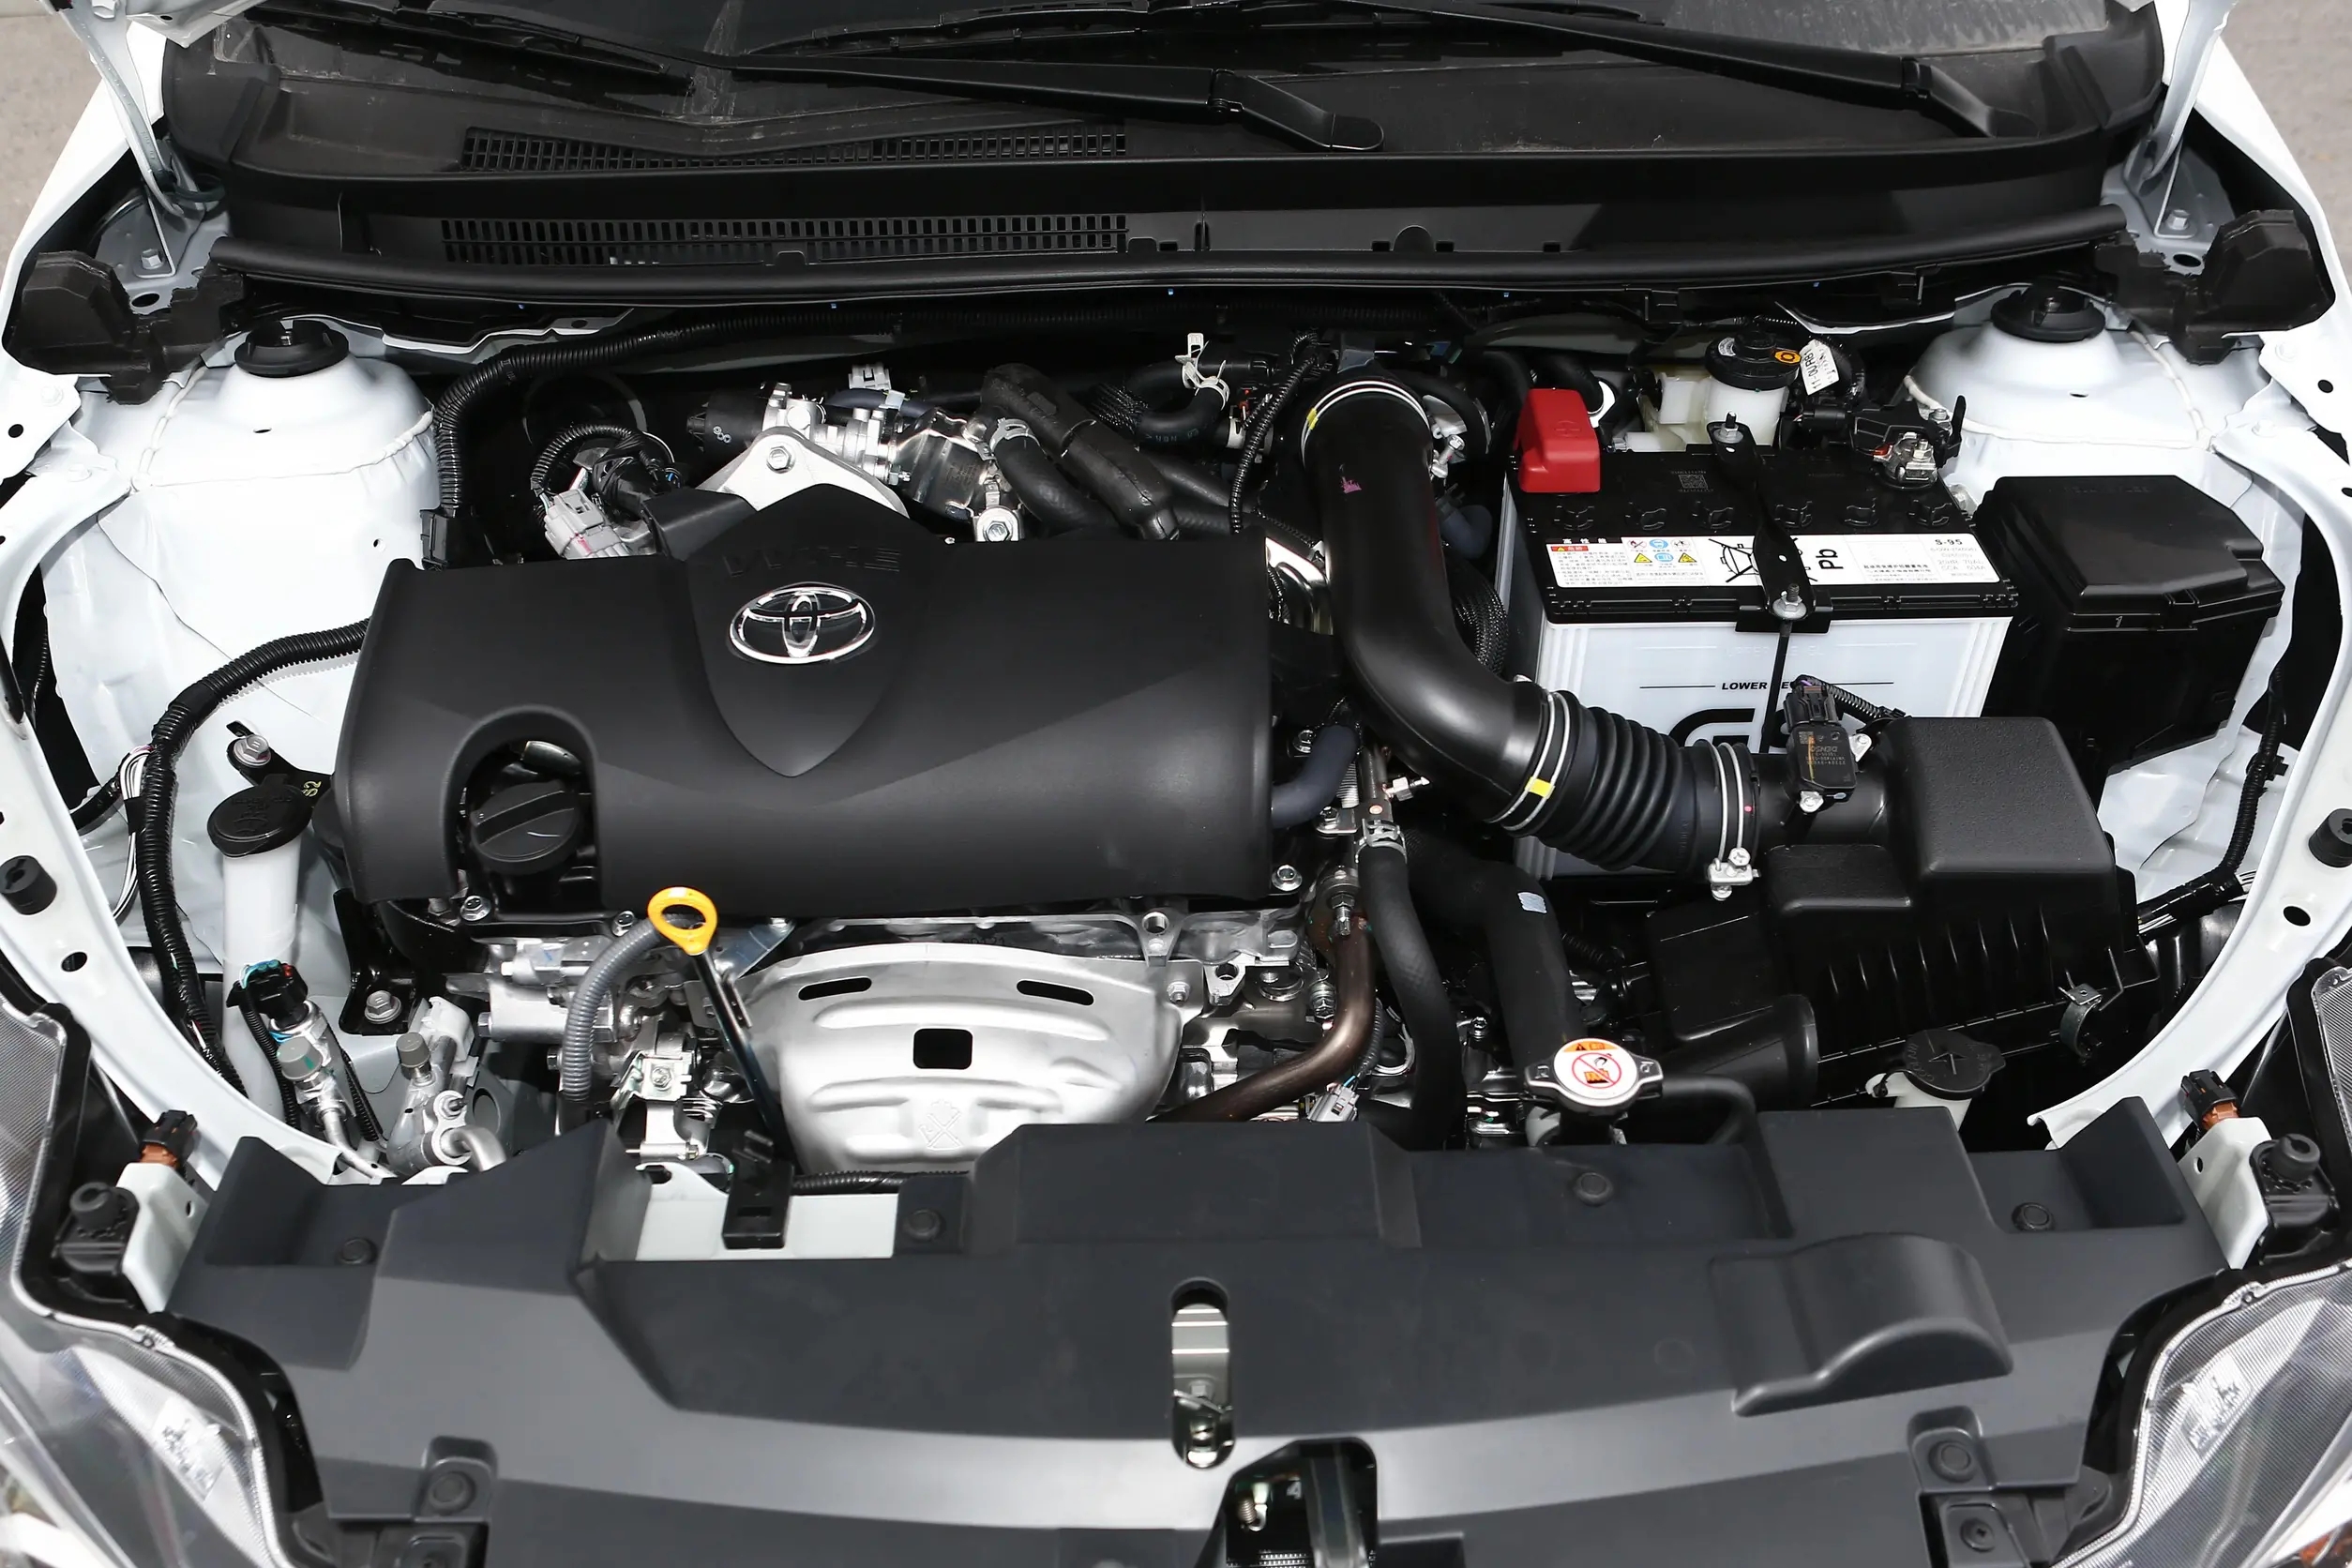 丰田的技术路线是以燃油经济性和耐用性为导向,以这台代号7nr的发动机